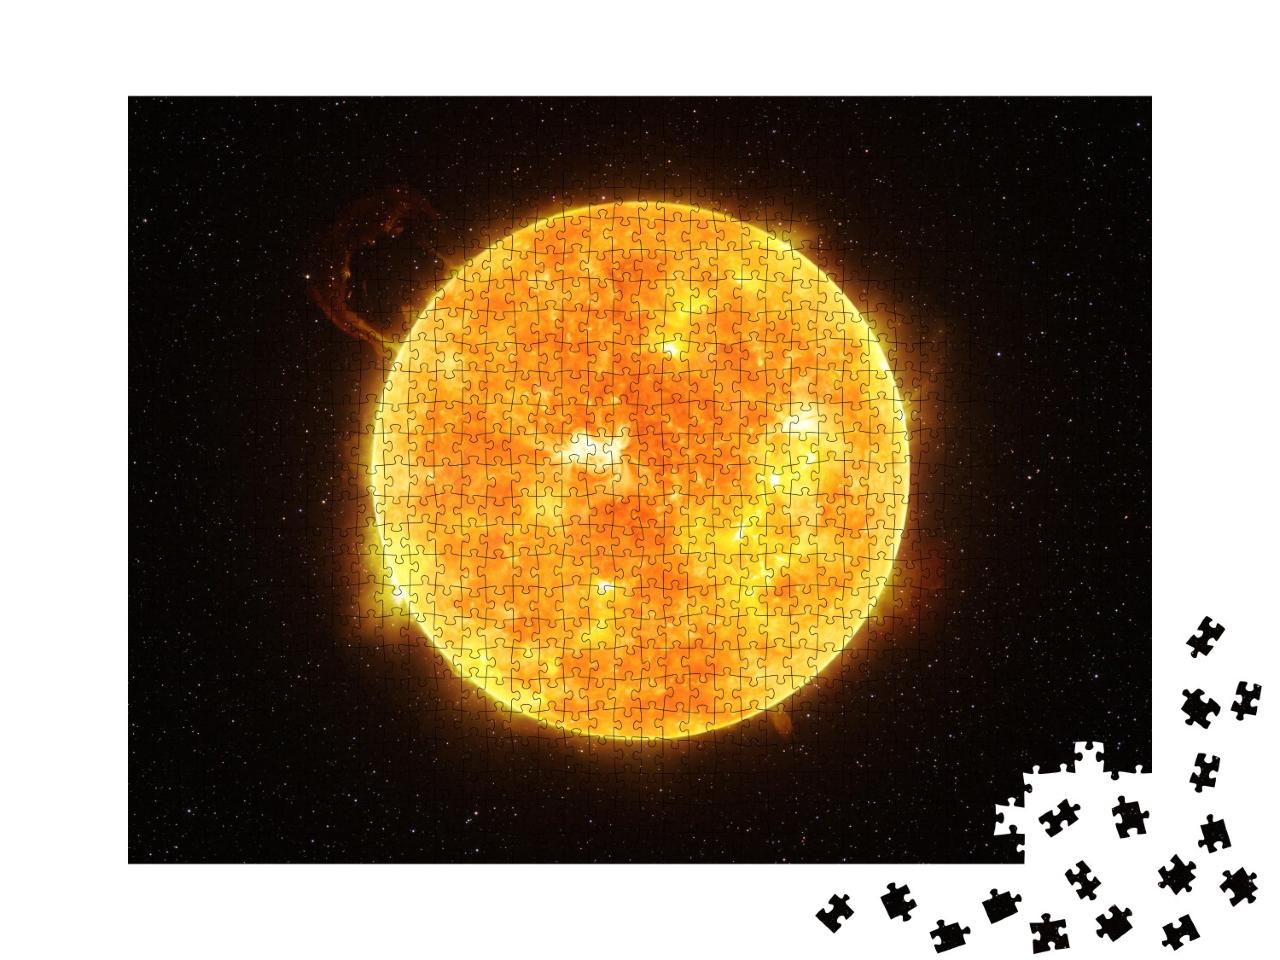 Puzzle de 1000 pièces « Le soleil »